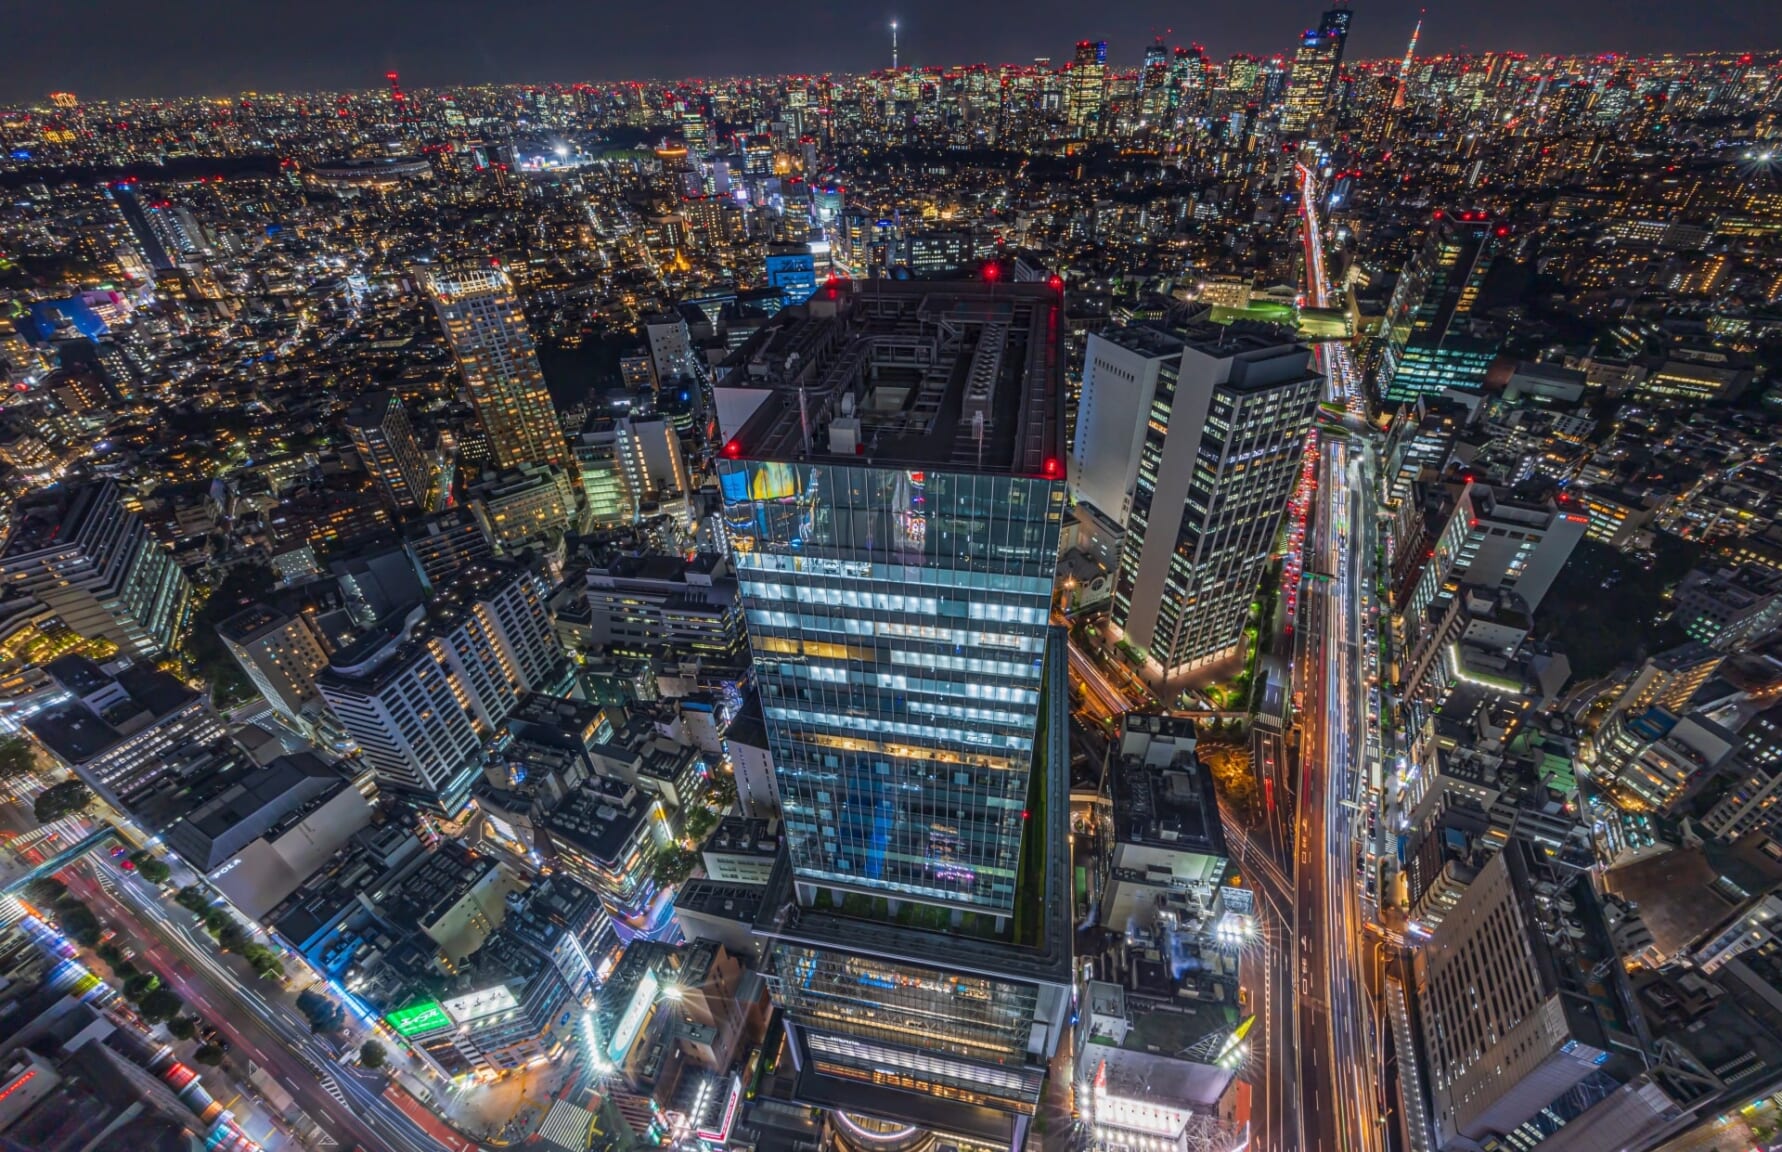 Aerial view of Shibuya at night